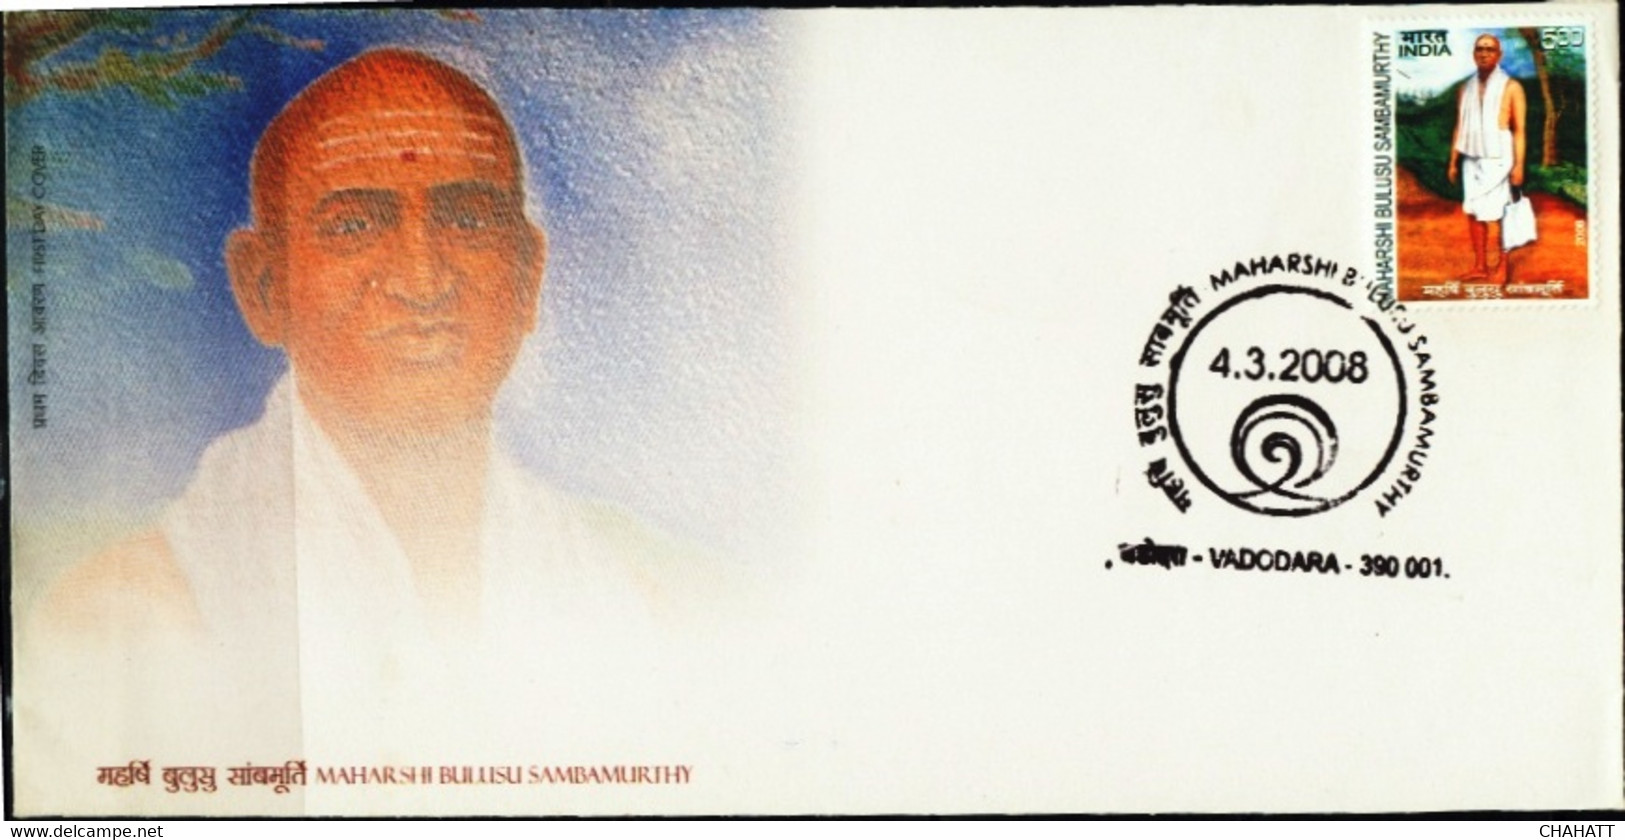 HINDUISM-SAGE MAHARSHI B SAMBAMURTHY- FDC-INDIA-2008 -BX3-36 - Hinduismo